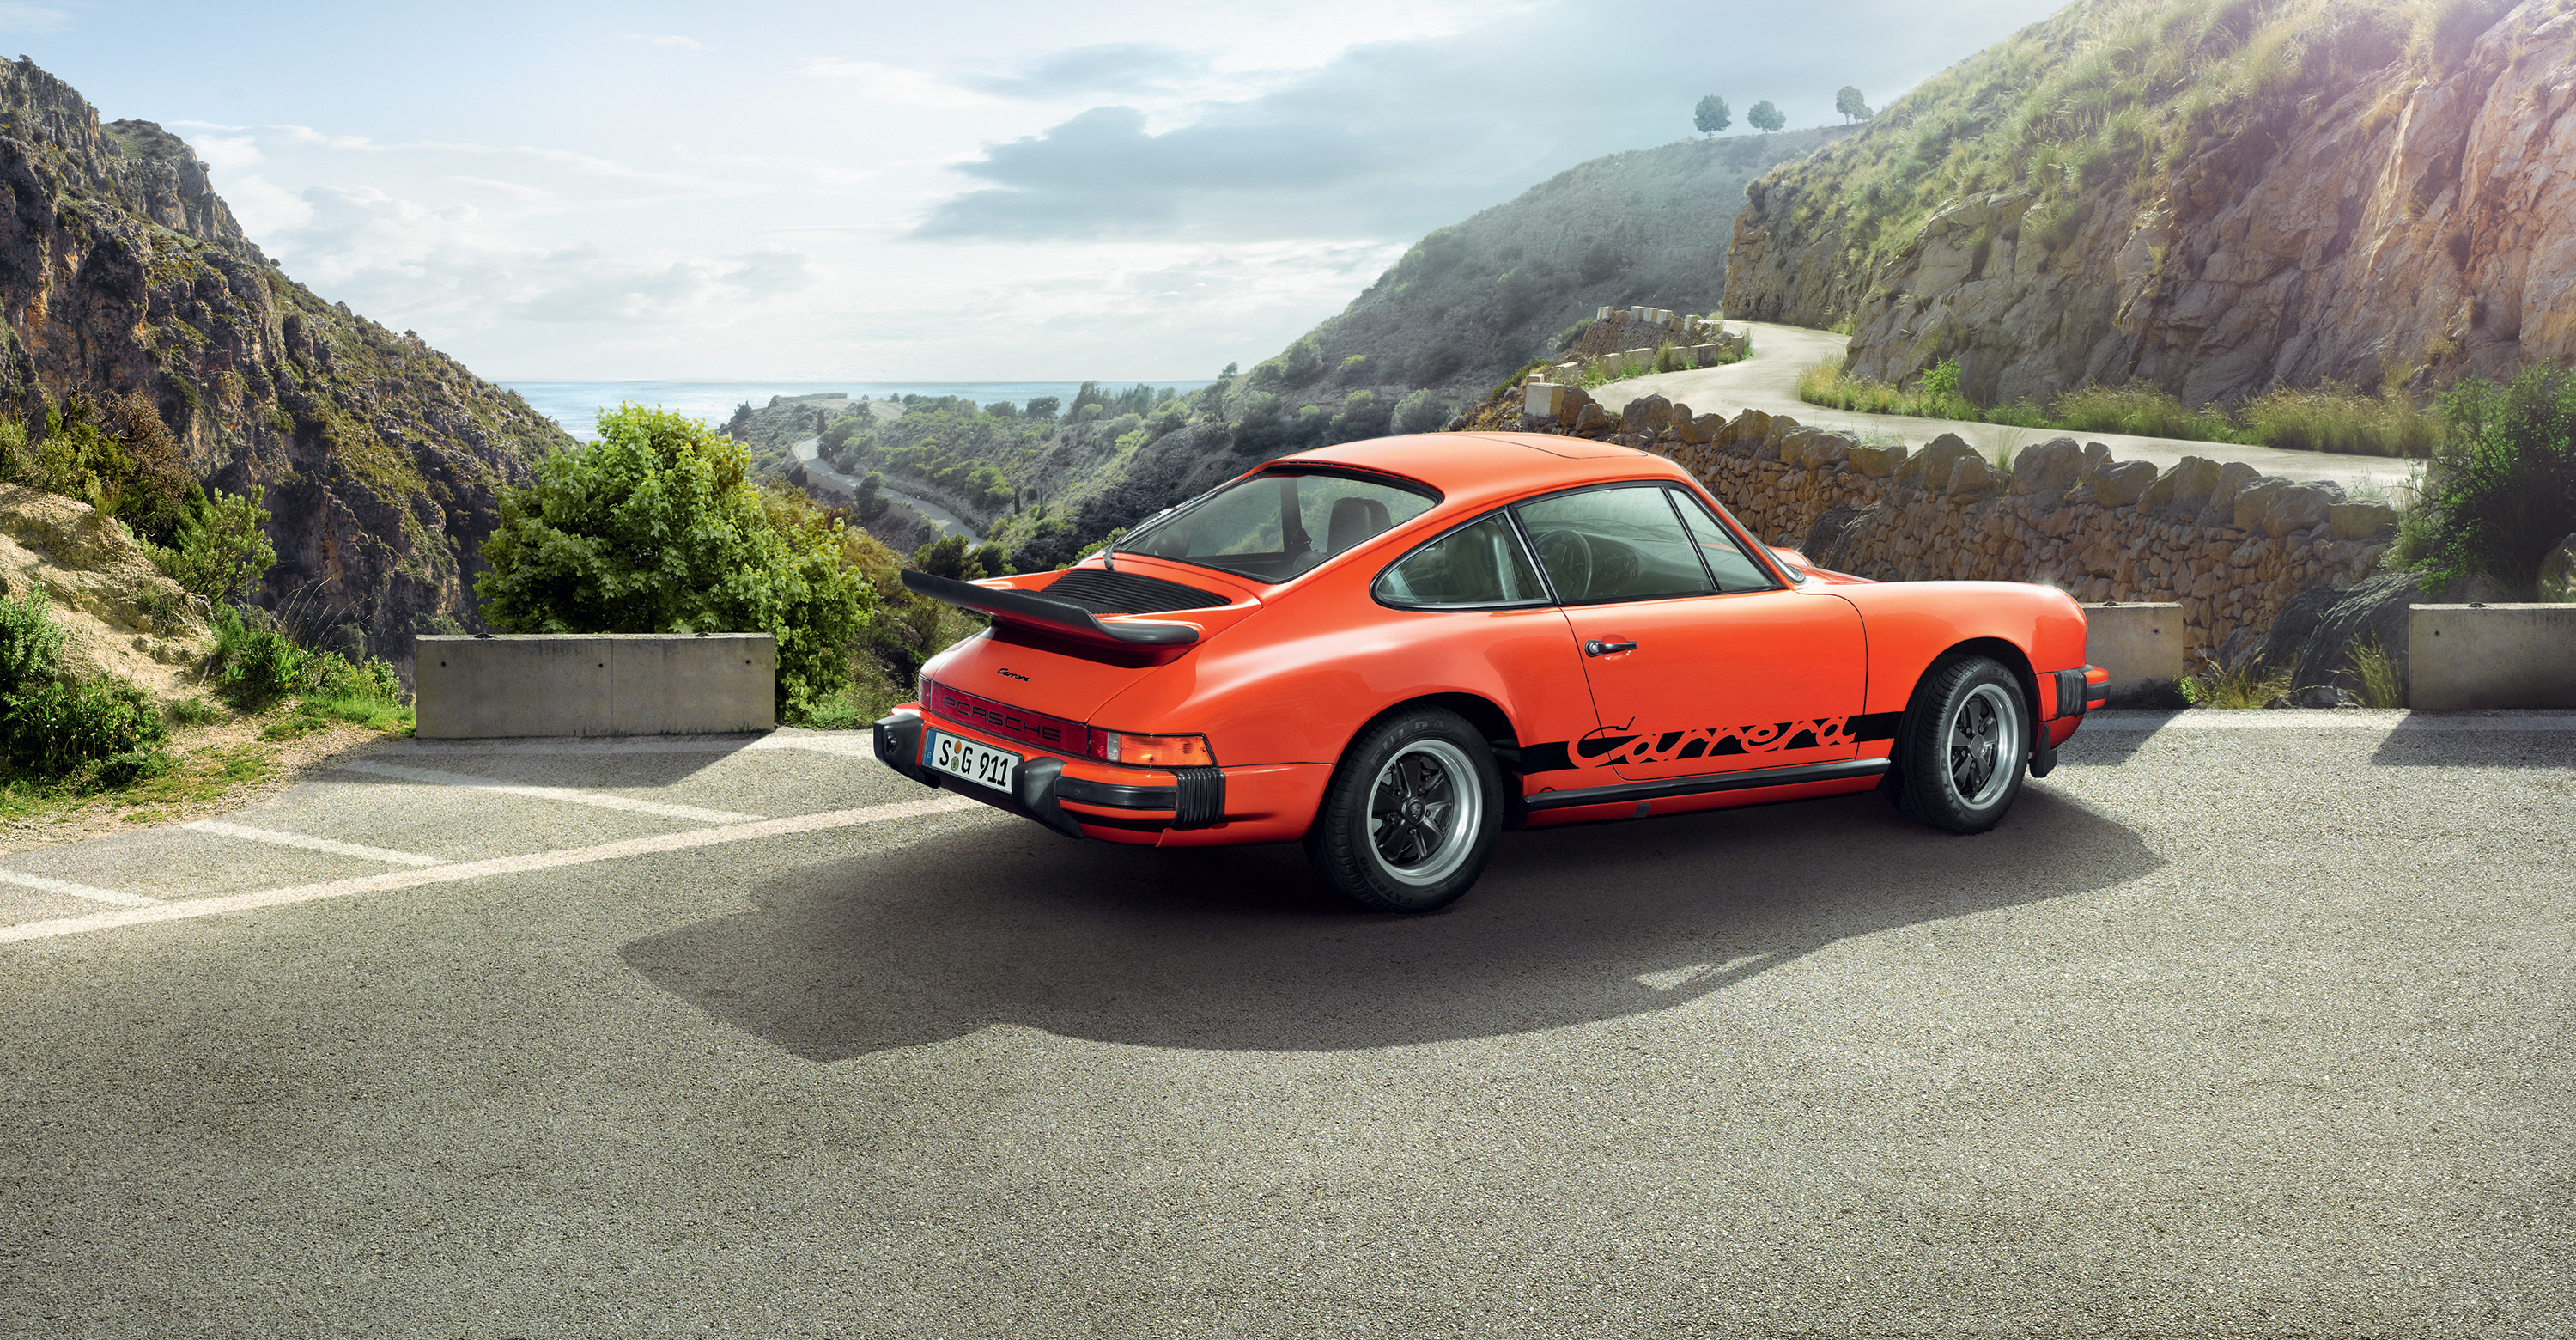 Best Porsche 911 Desktop Images